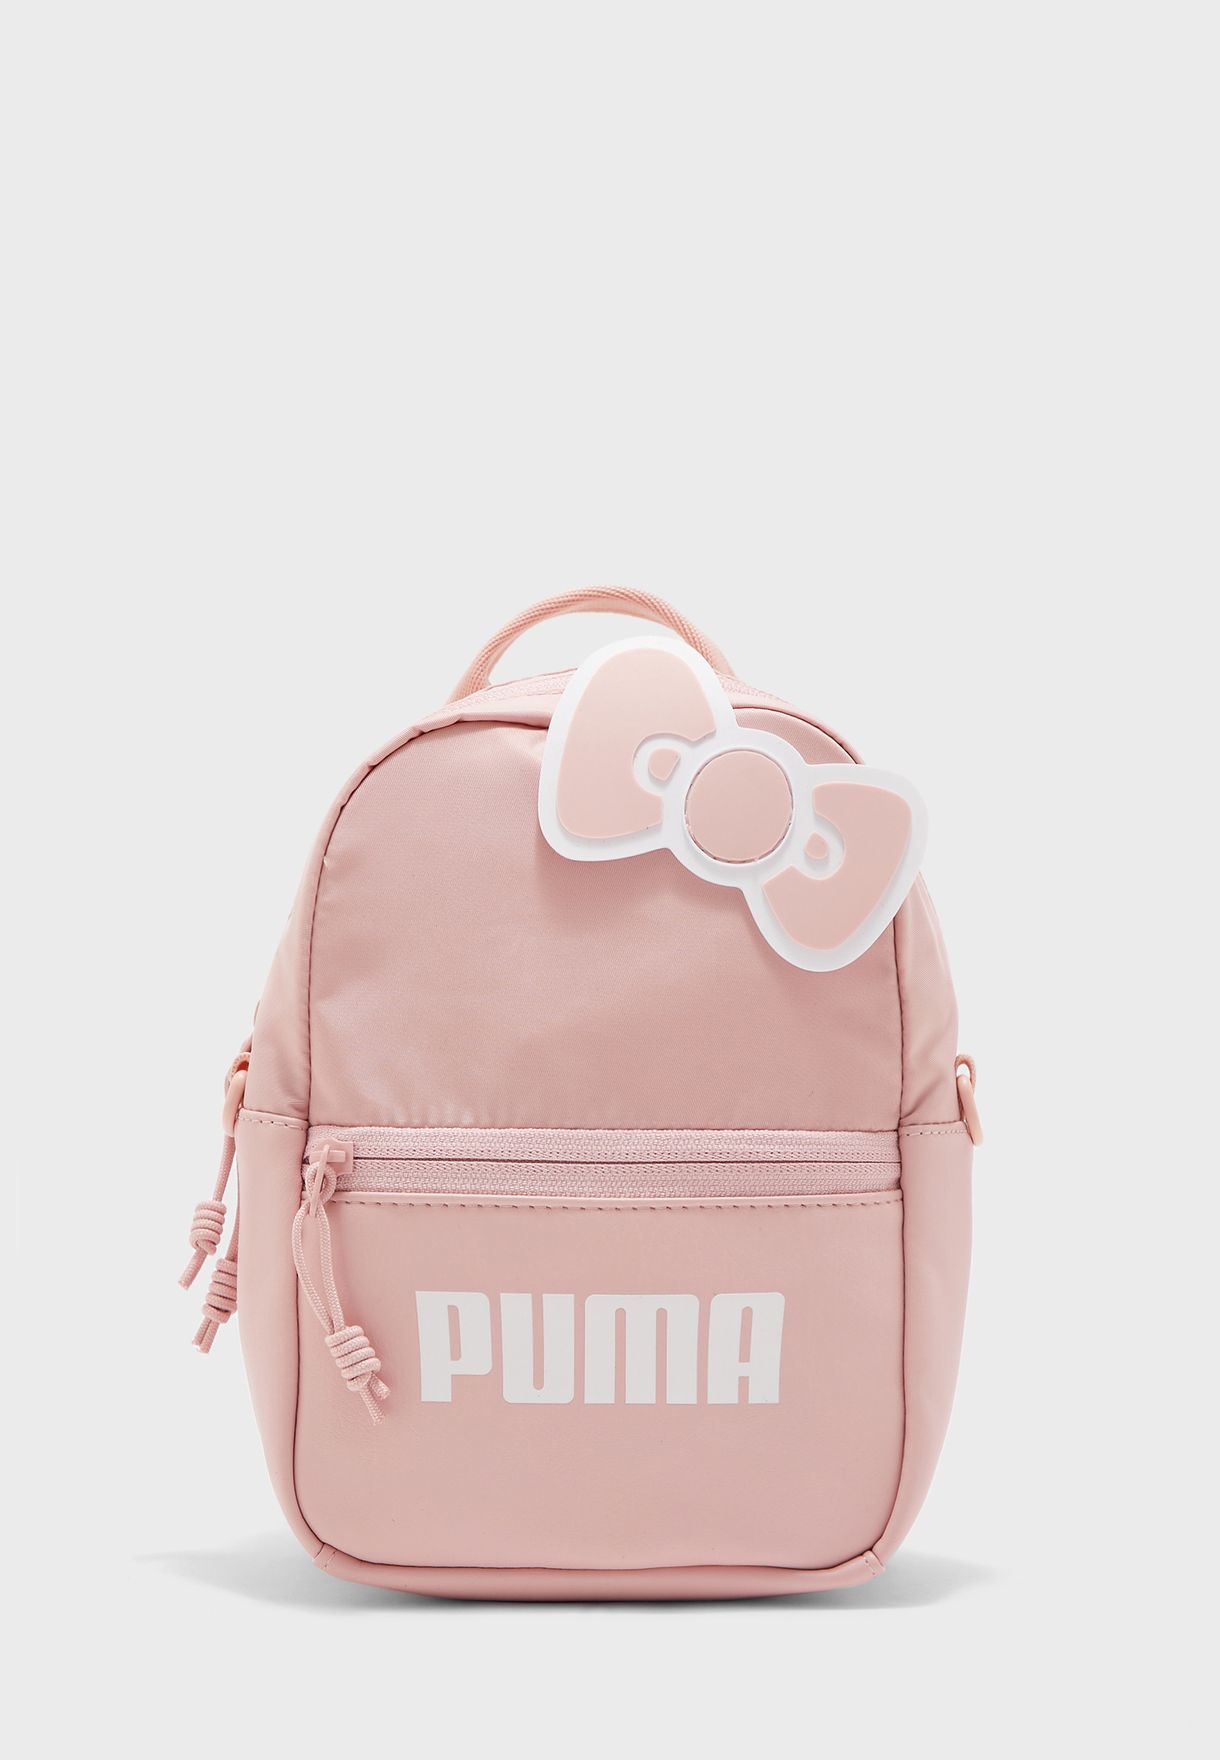 puma wallets pink